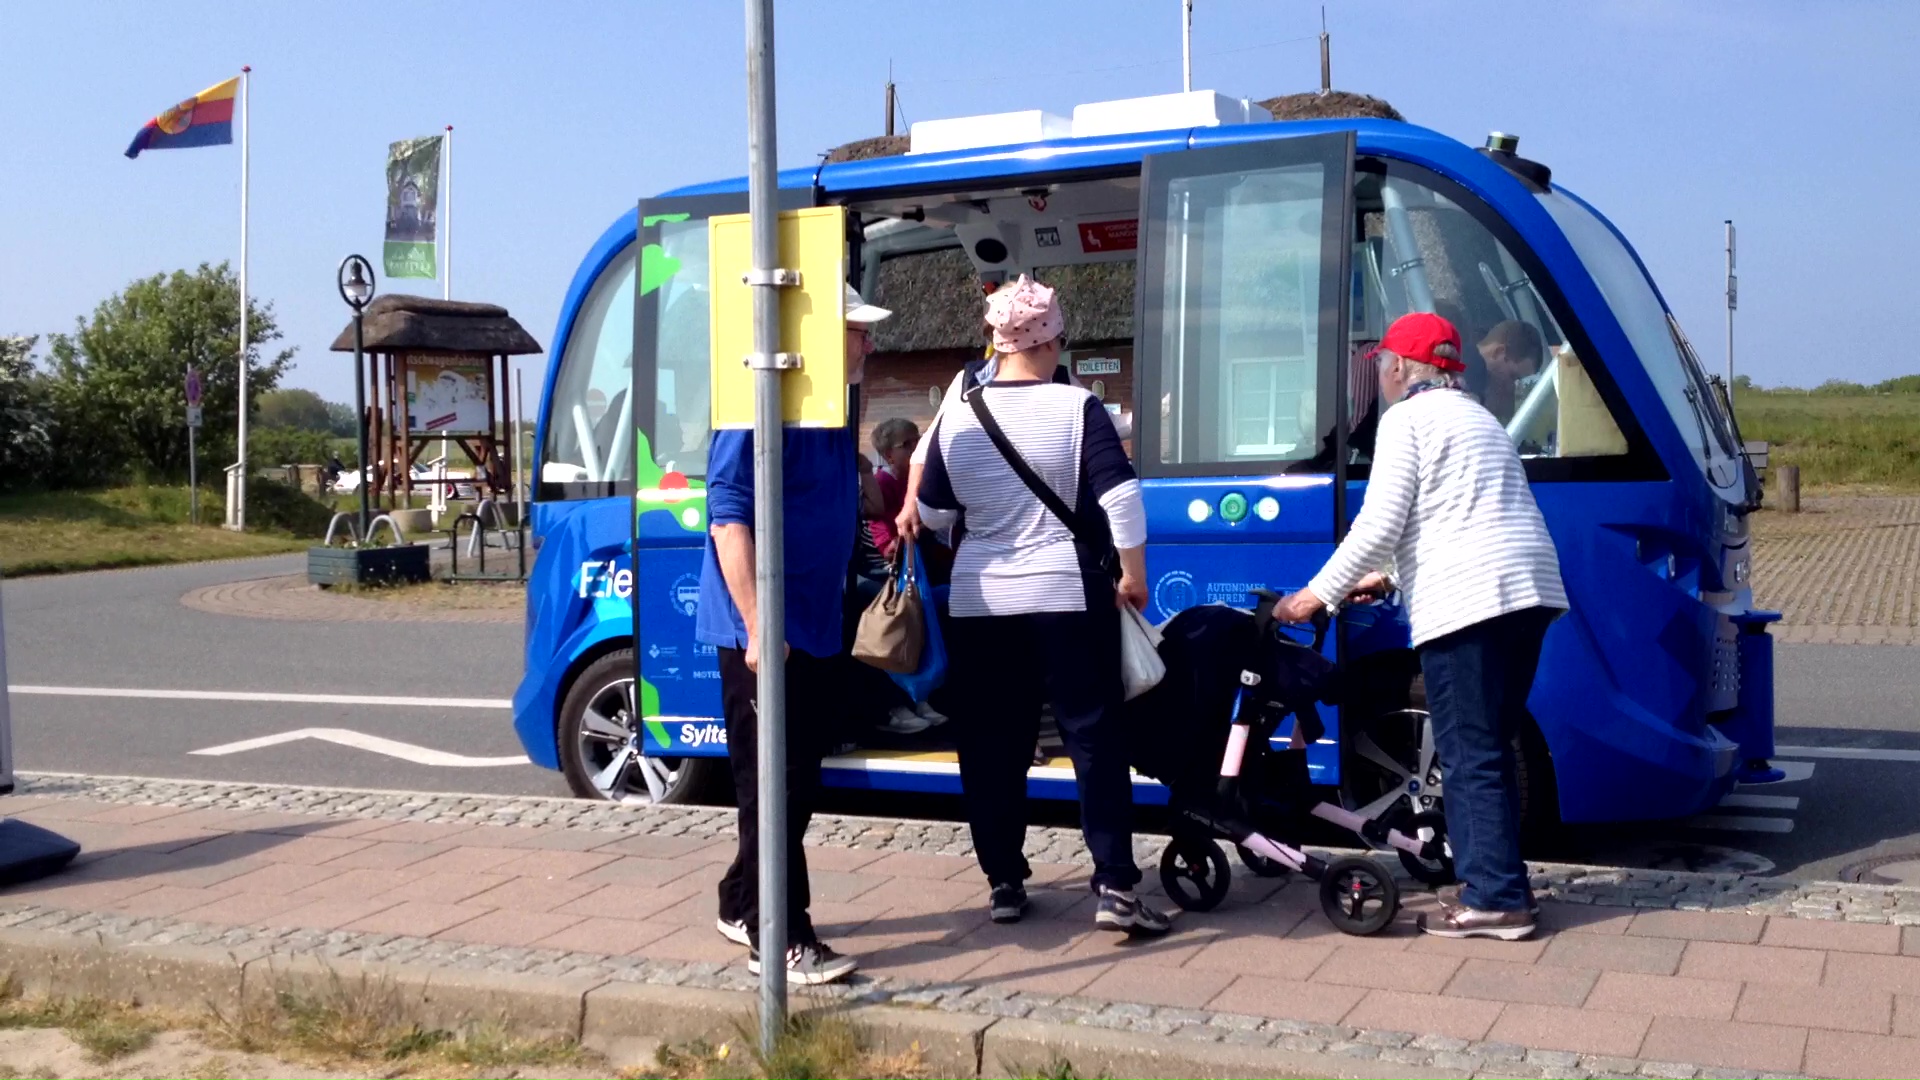 Autonomer Minibus in Keitum auf Sylt: Menschen beim Einsteigen.